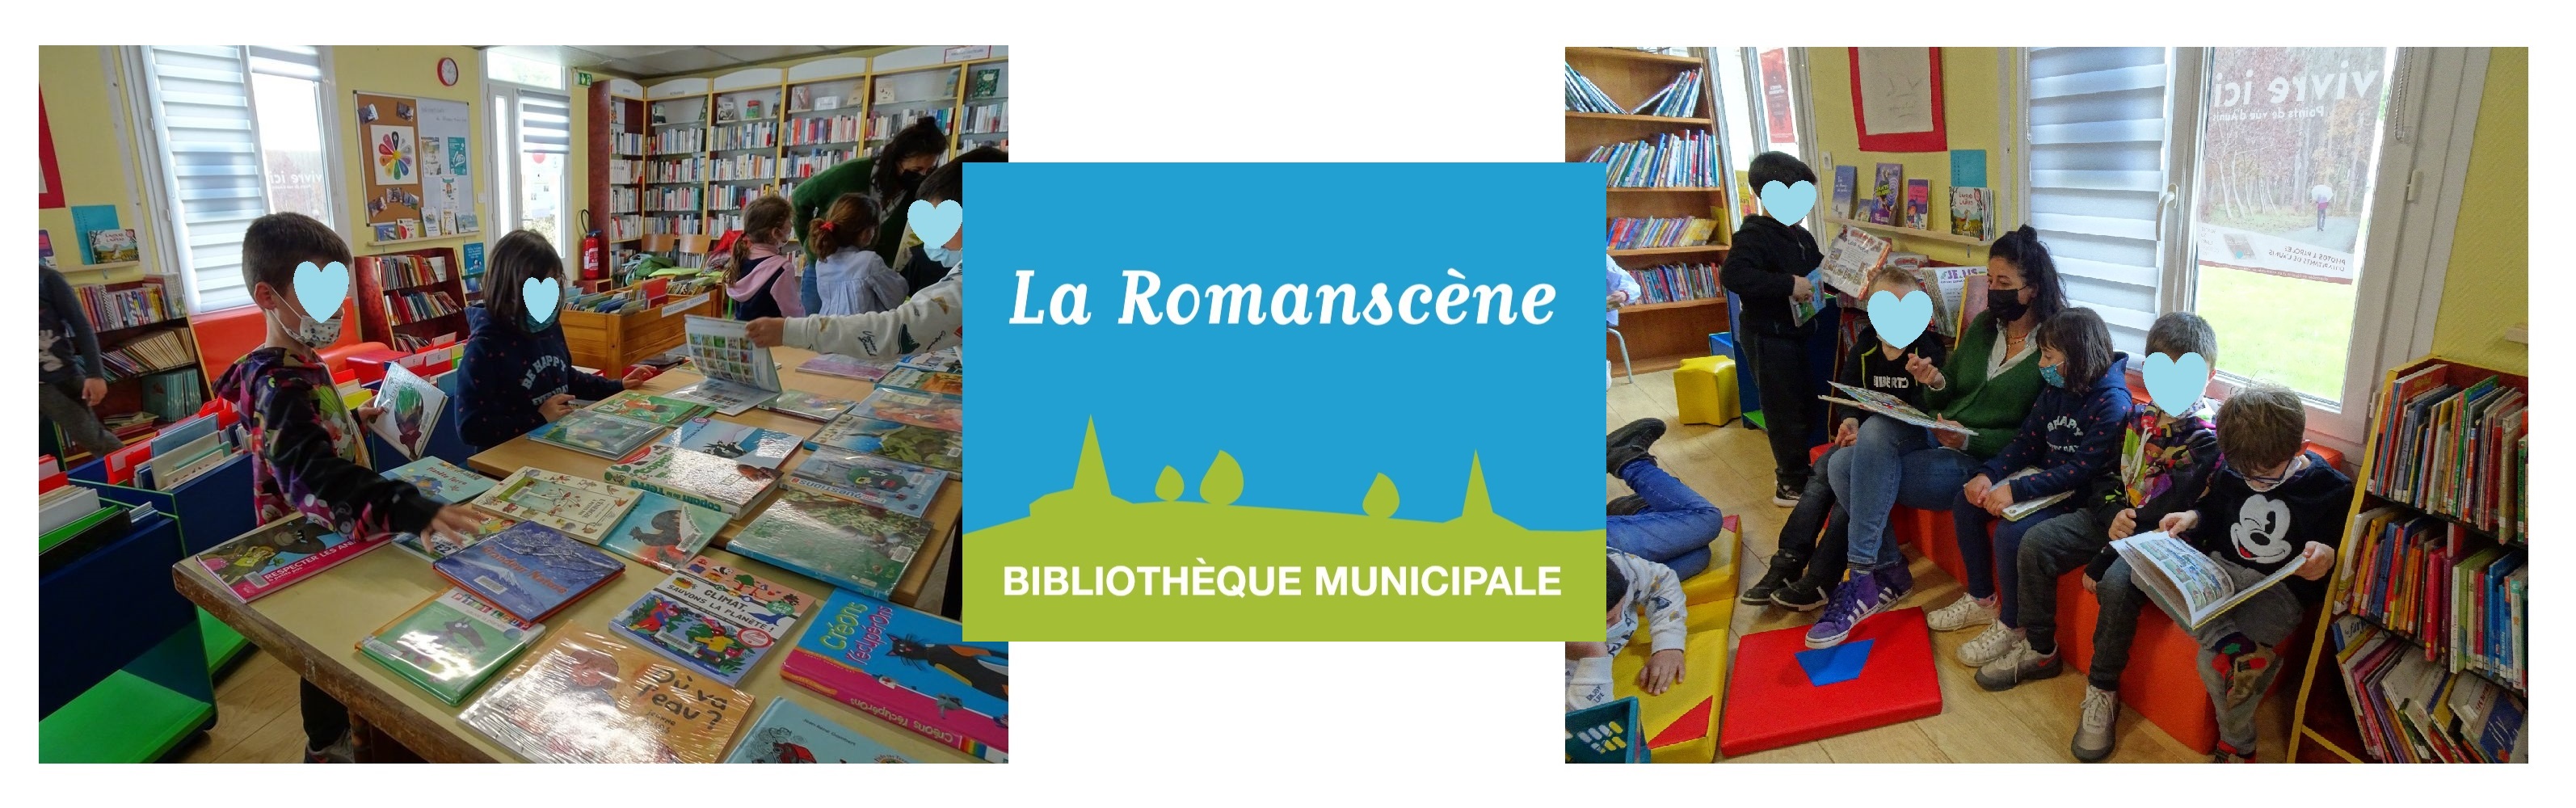 Bibliothèque Romanscène bis